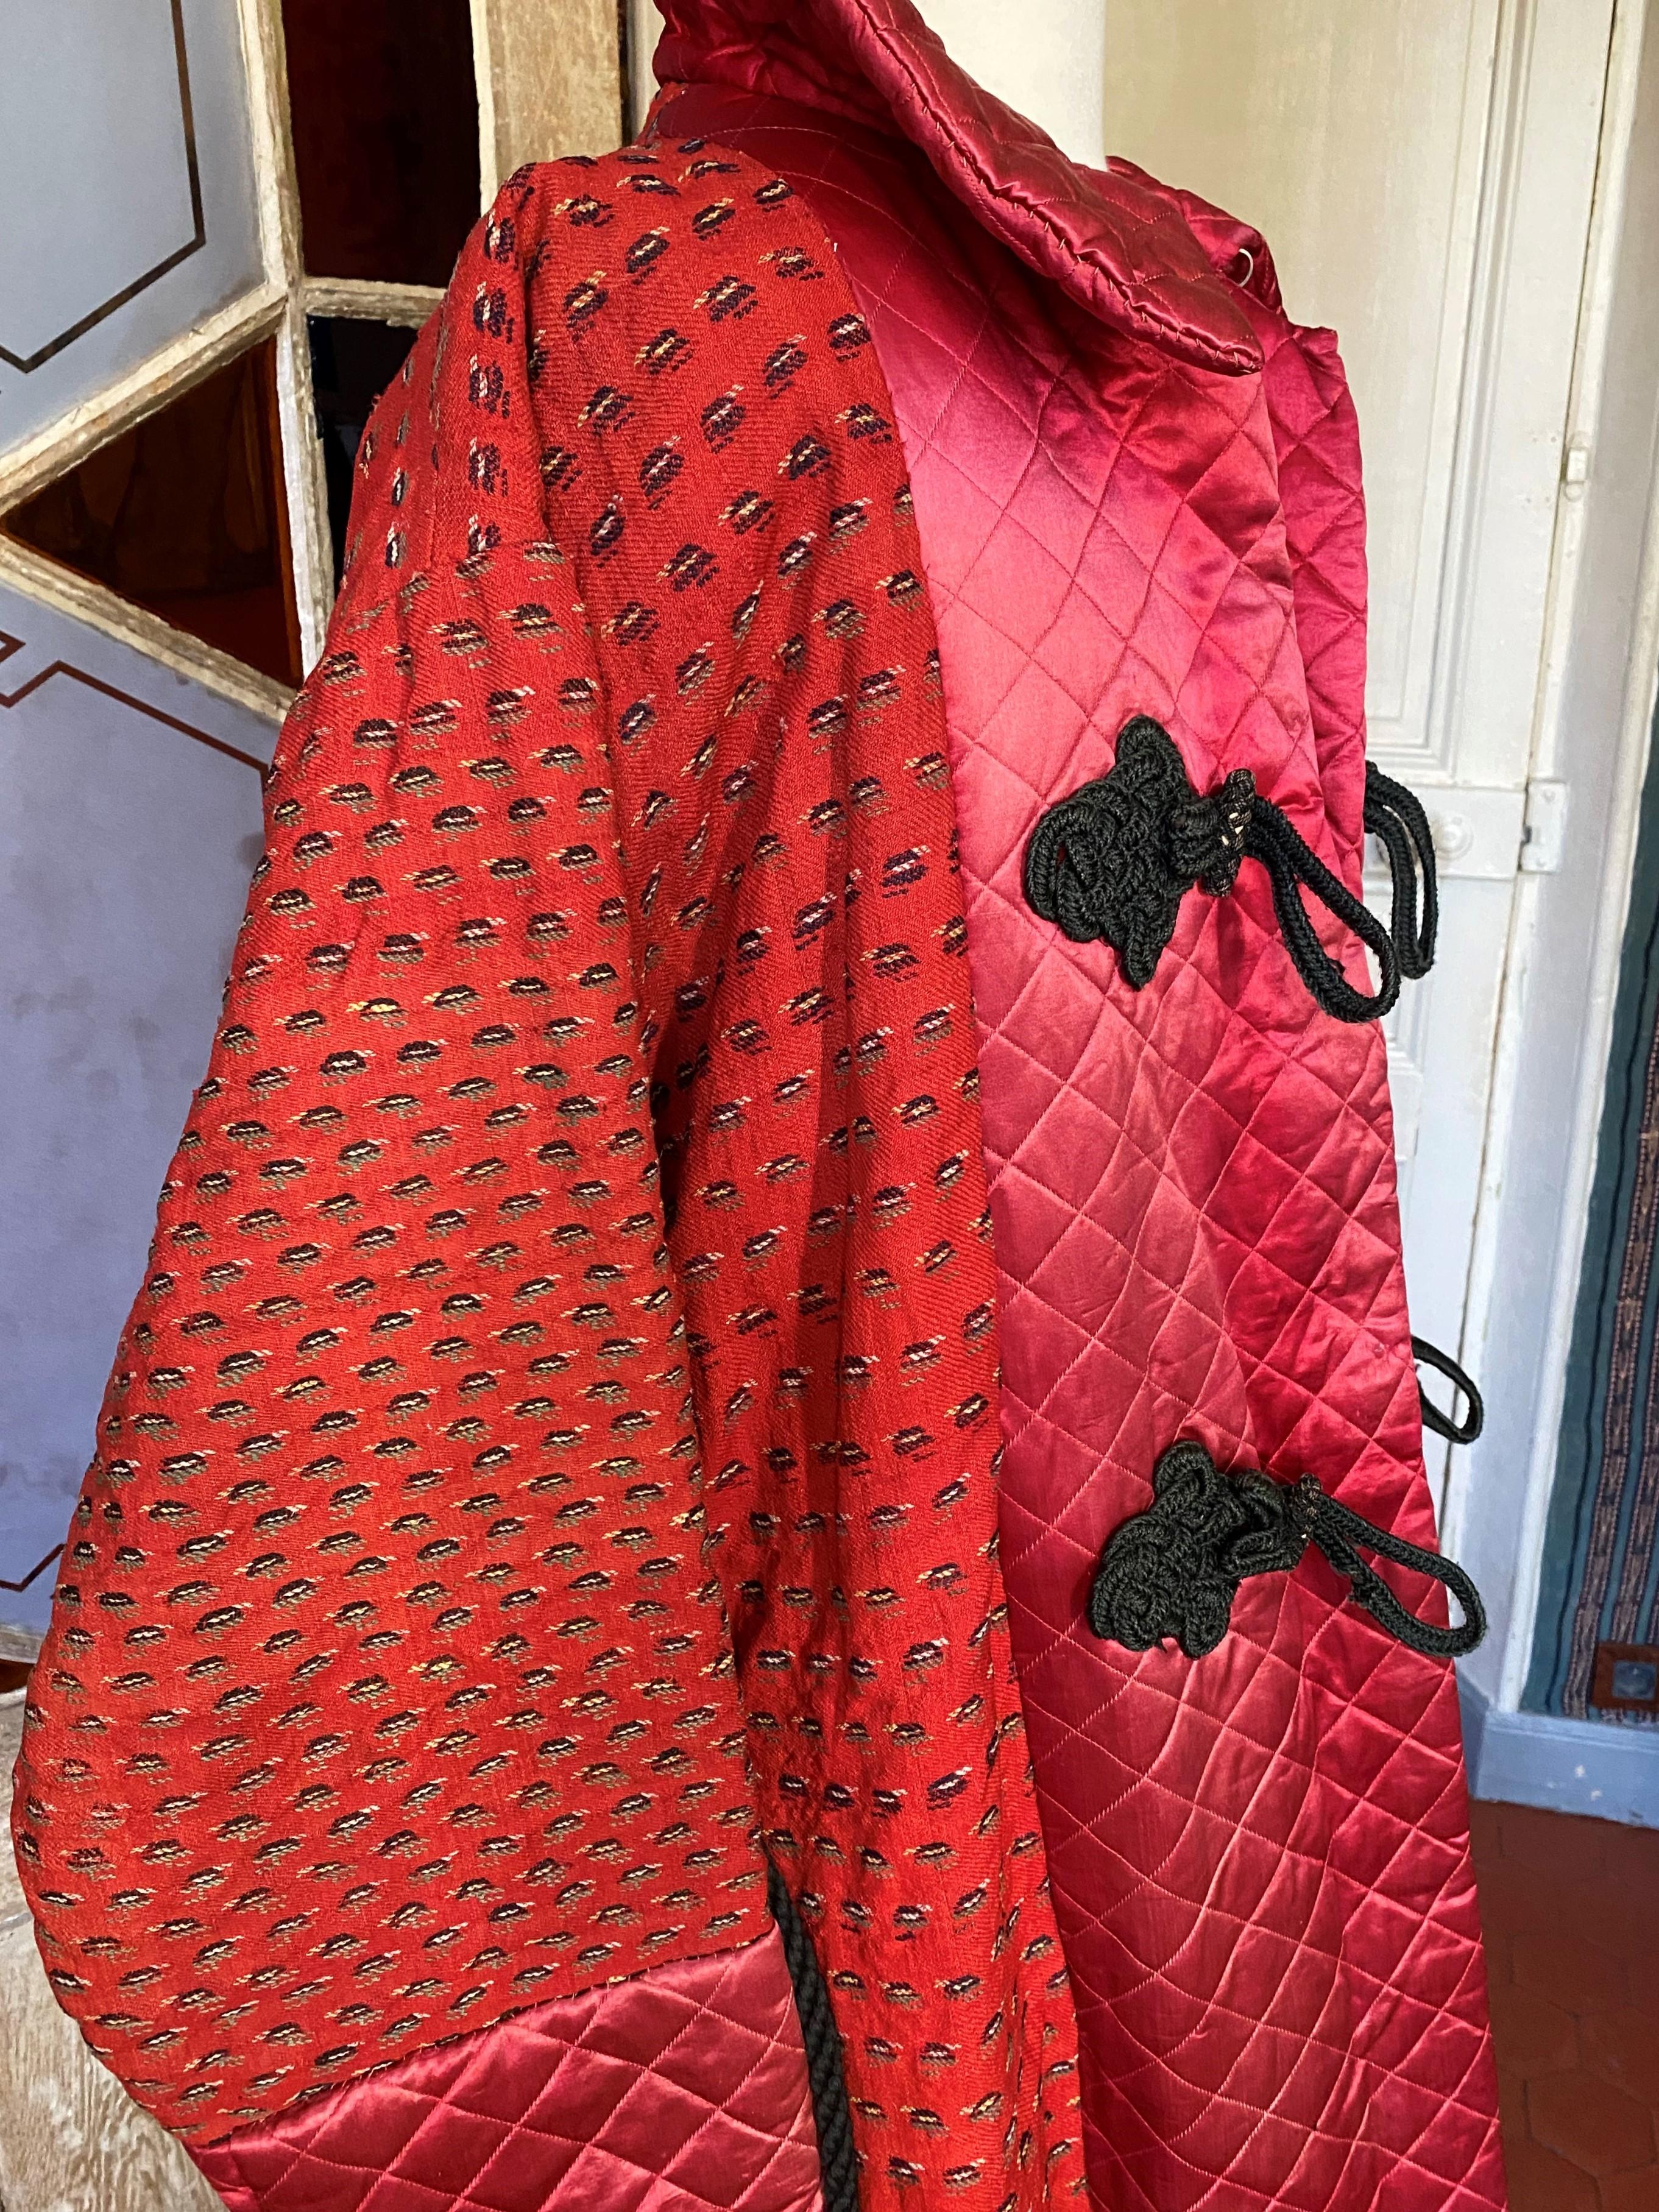 banyan robe pattern